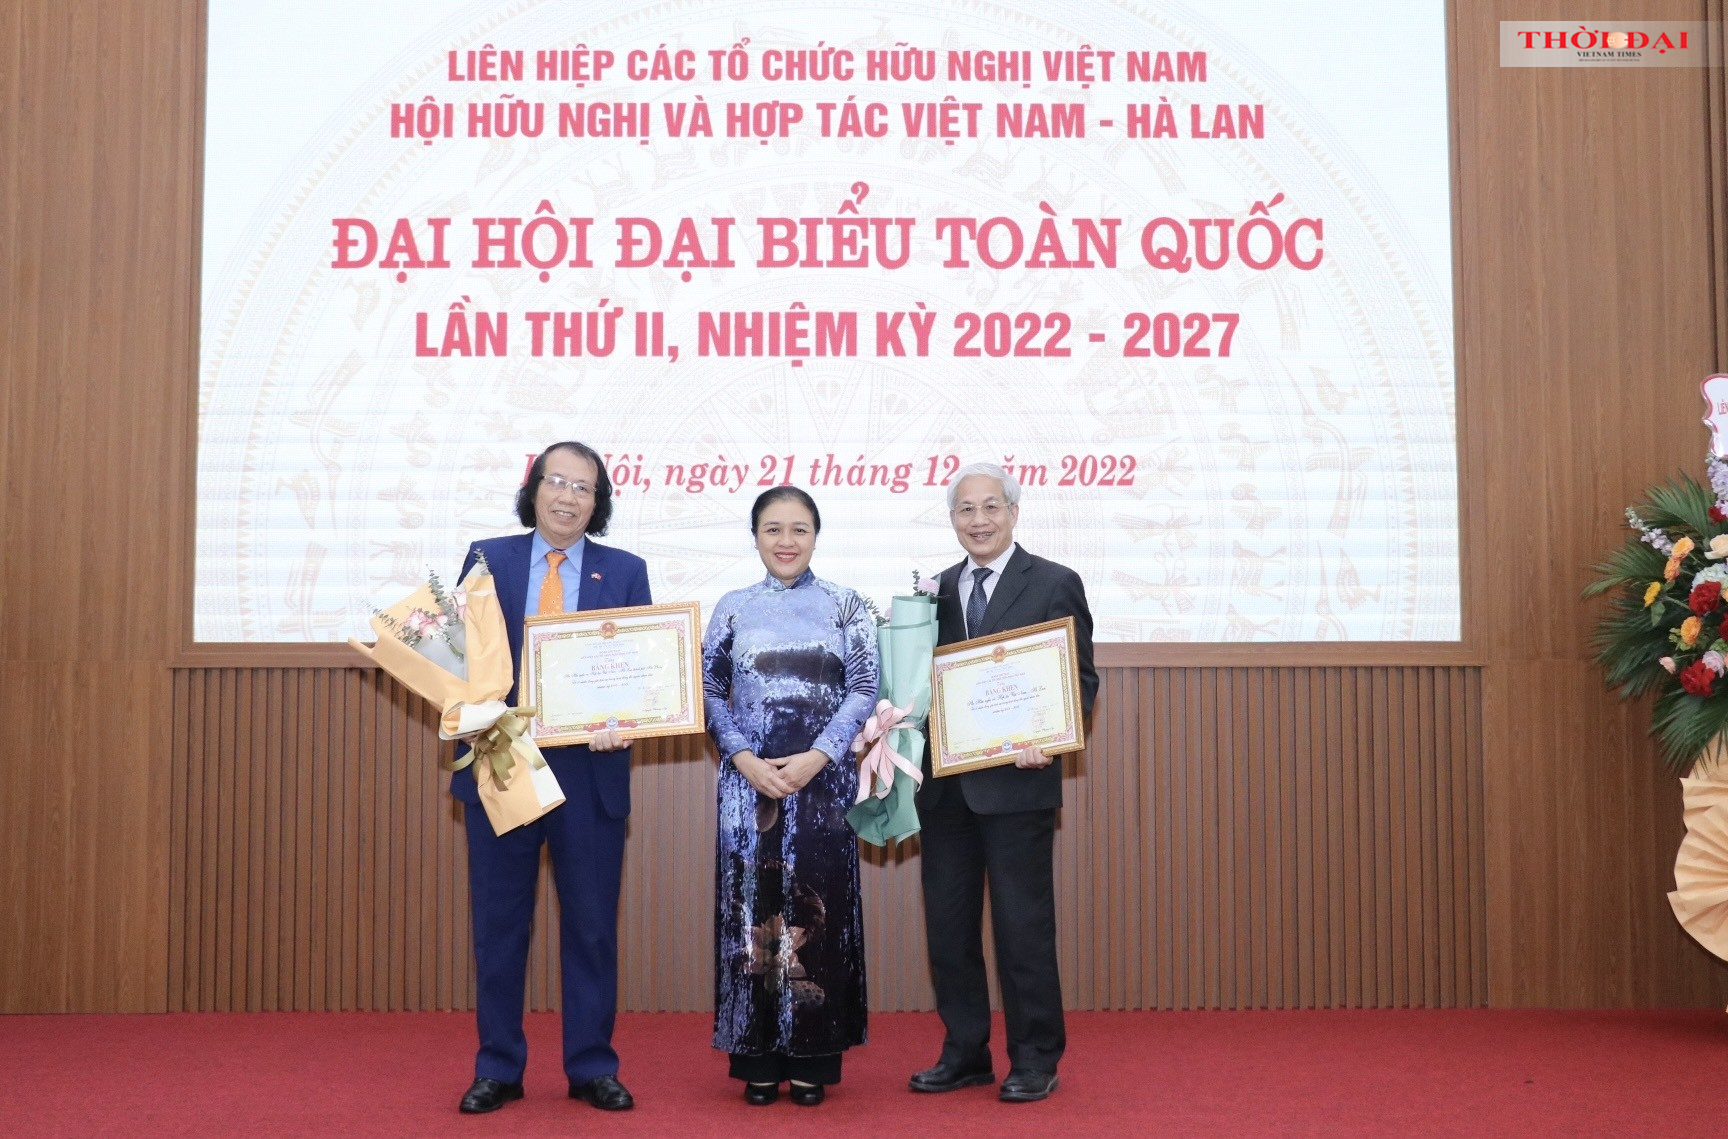 Chủ tịch Liên hiệp các tổ chức hữu nghị Việt Nam Nguyễn Phương Nga (ở giữa) trao Bằng khen cho đại diện hai tập thể của Hội hữu nghị và hợp tác Việt Nam - Hà Lan đã có thành tích 2 tập thể và 9 cá nhân của Hội vì đã có nhiều đóng góp tích cực trong hoạt đ